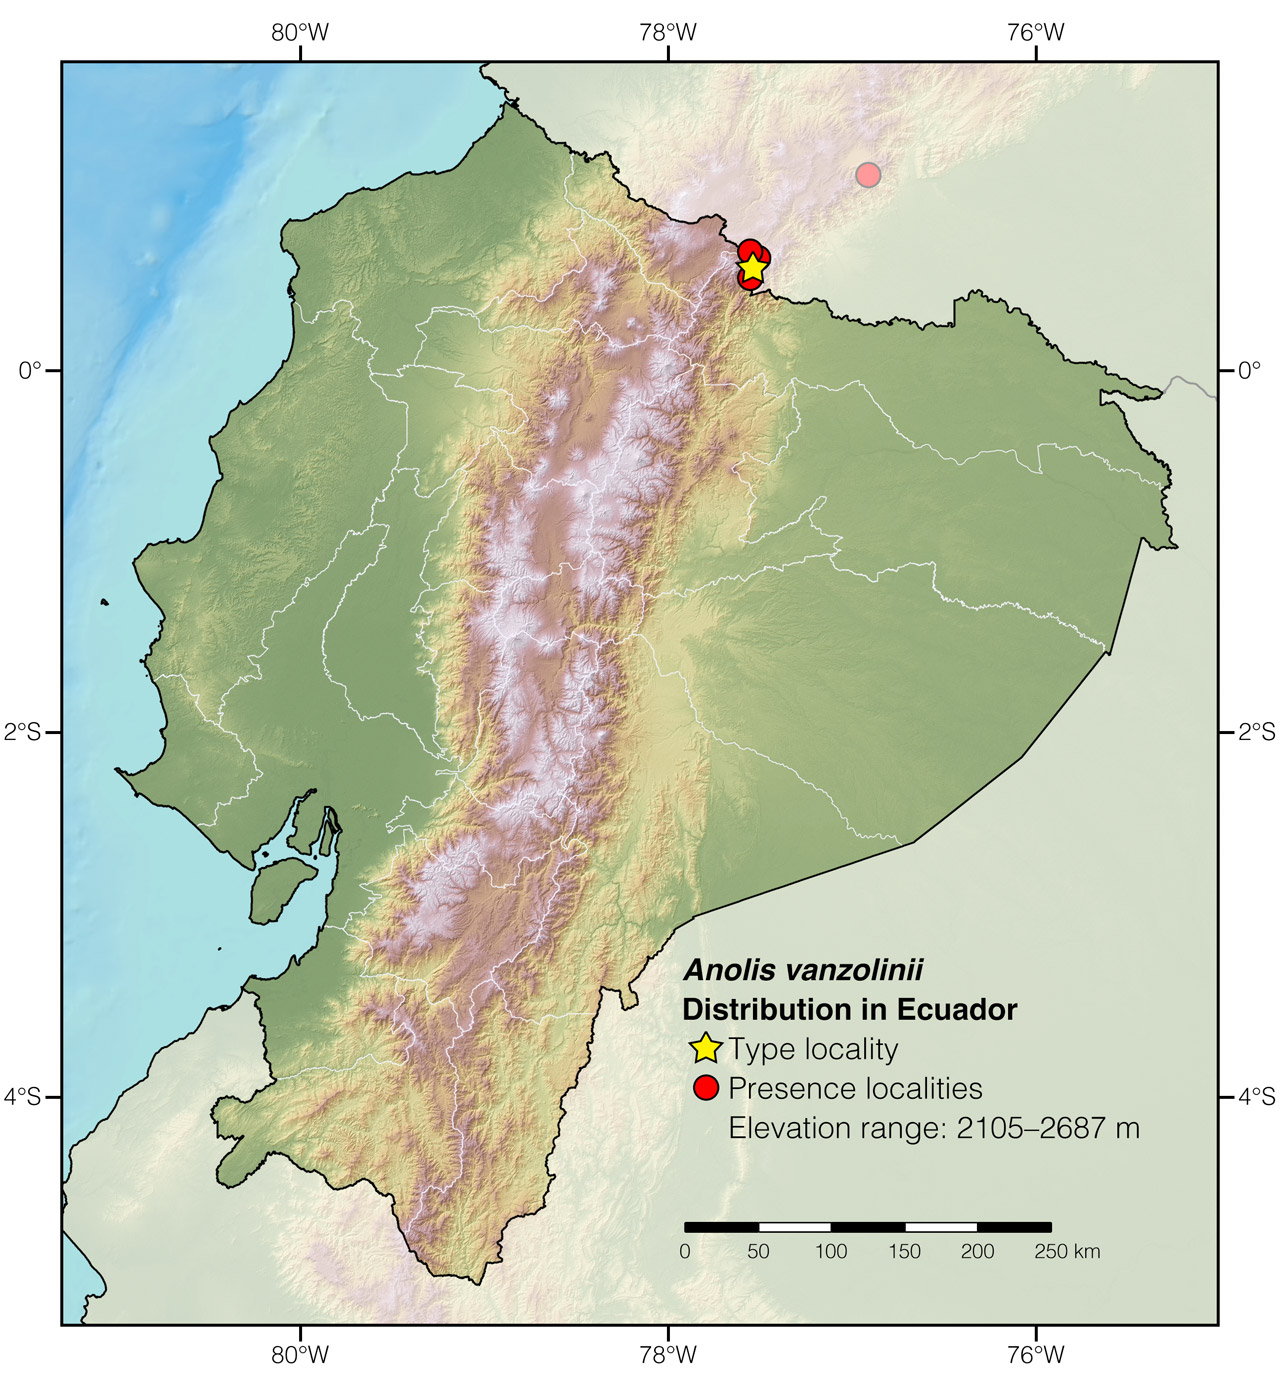 Distribution of Anolis vanzolinii in Ecuador